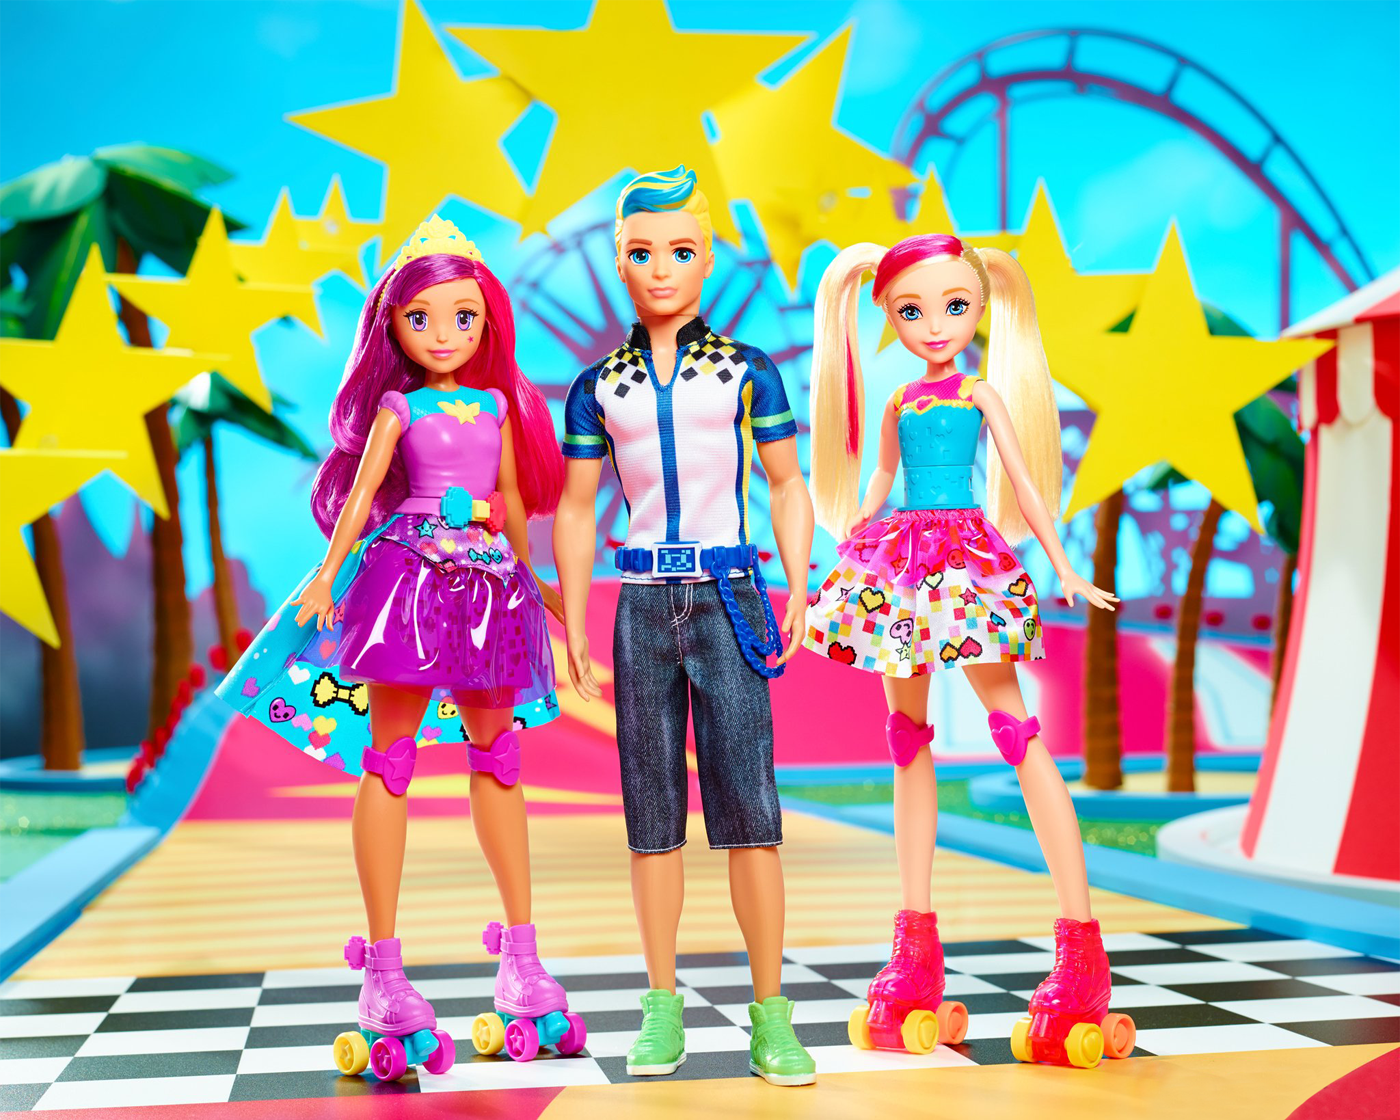 Игры где играют куклами. Барби виртуальный мир. Барби видео гейм Хиро. Куклы Барби виртуальный мир.